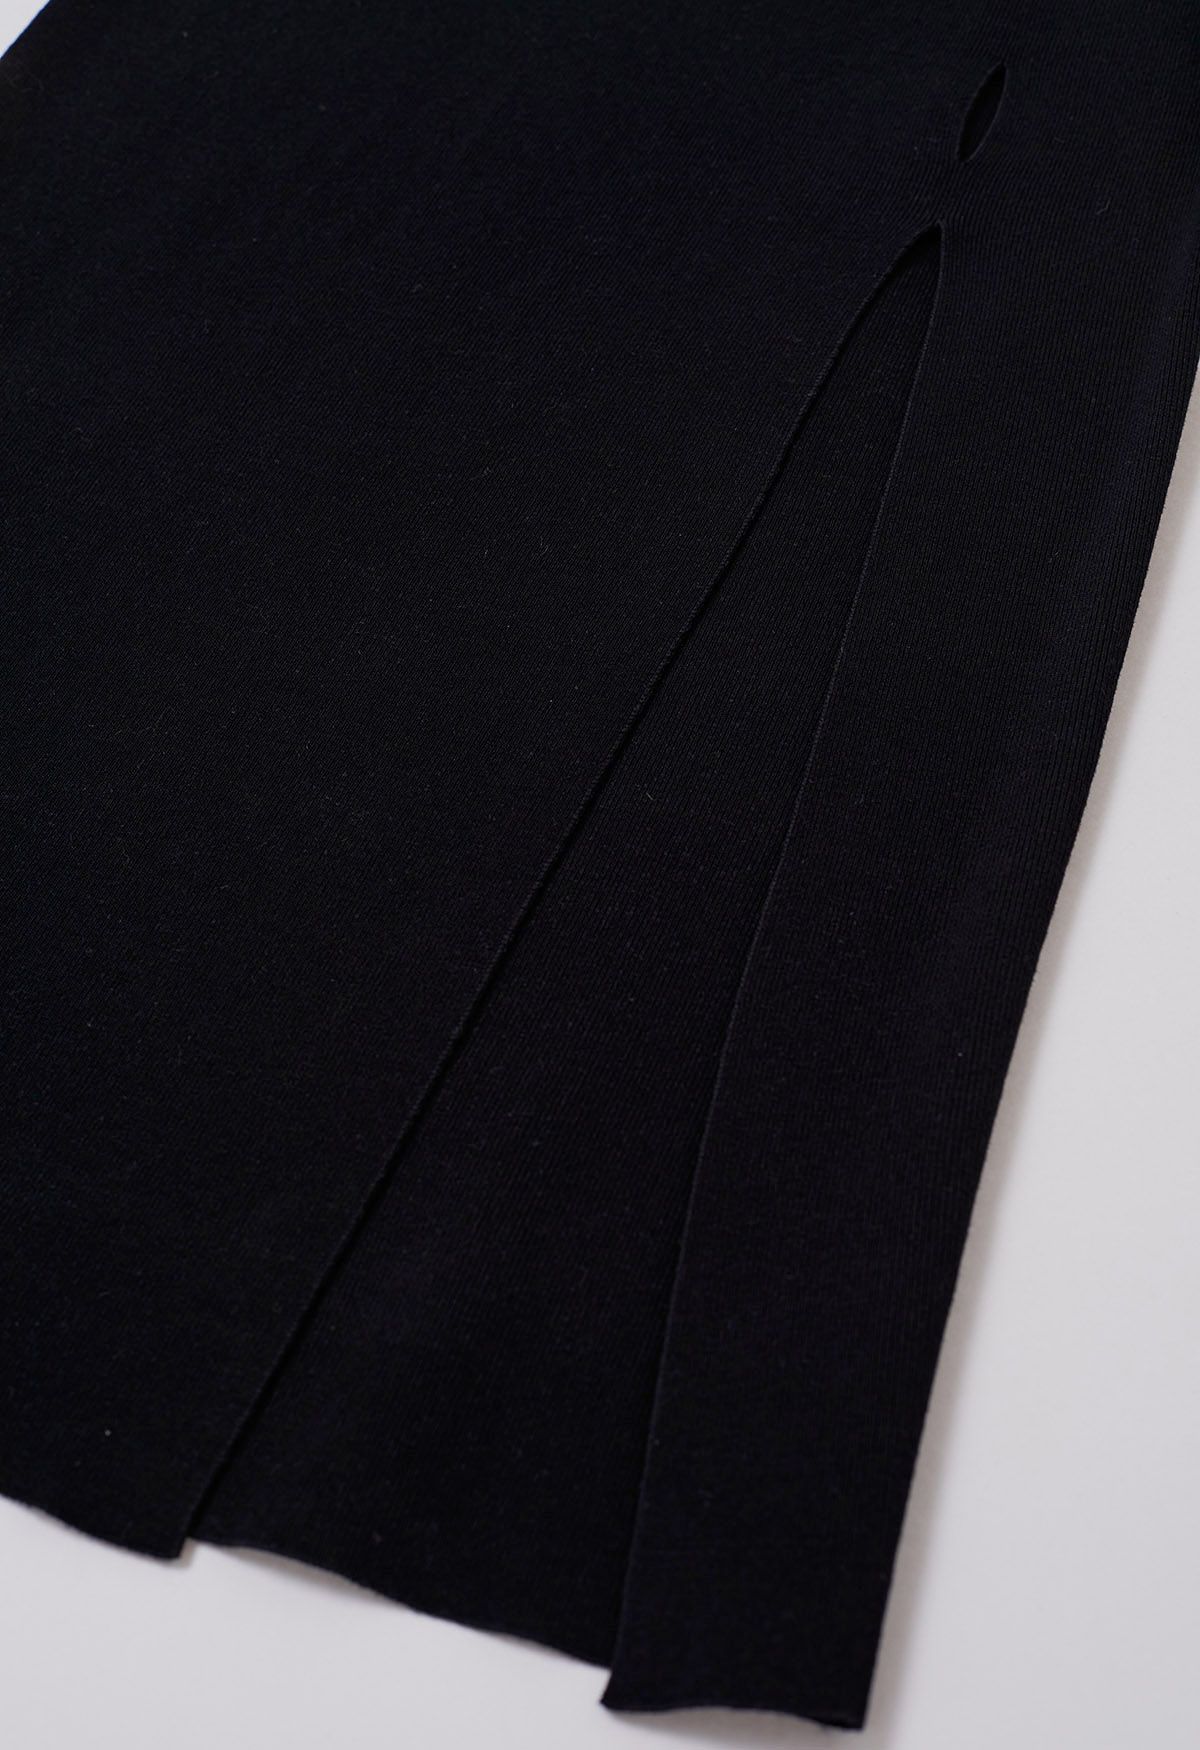 Falda midi de punto con abertura lateral y abertura en negro